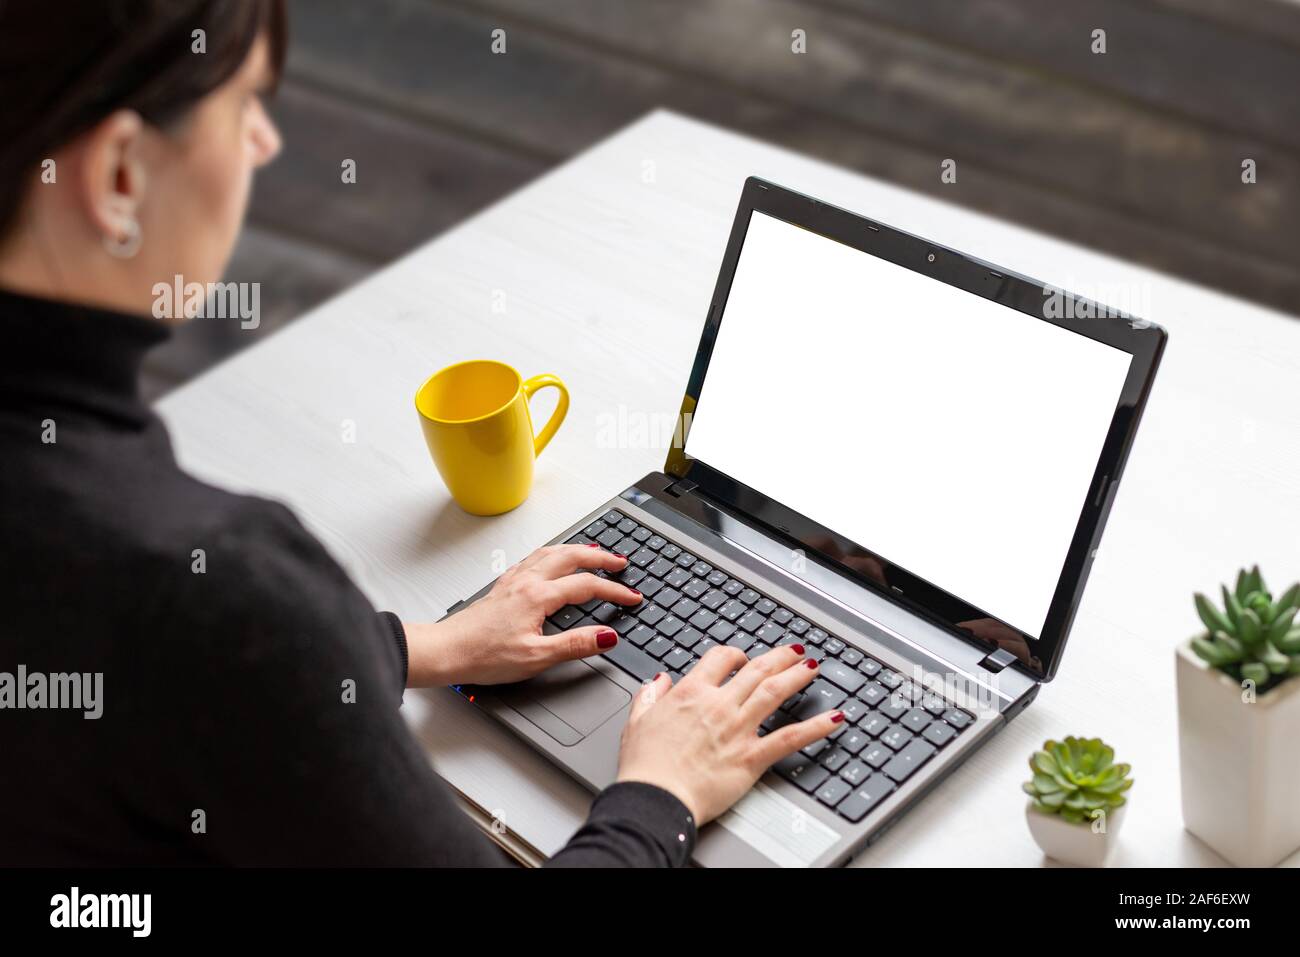 Travail sur ordinateur portable avec femme écran isolé sur blanc maquette pour télévision 24 avec tasse de café et des plantes Banque D'Images